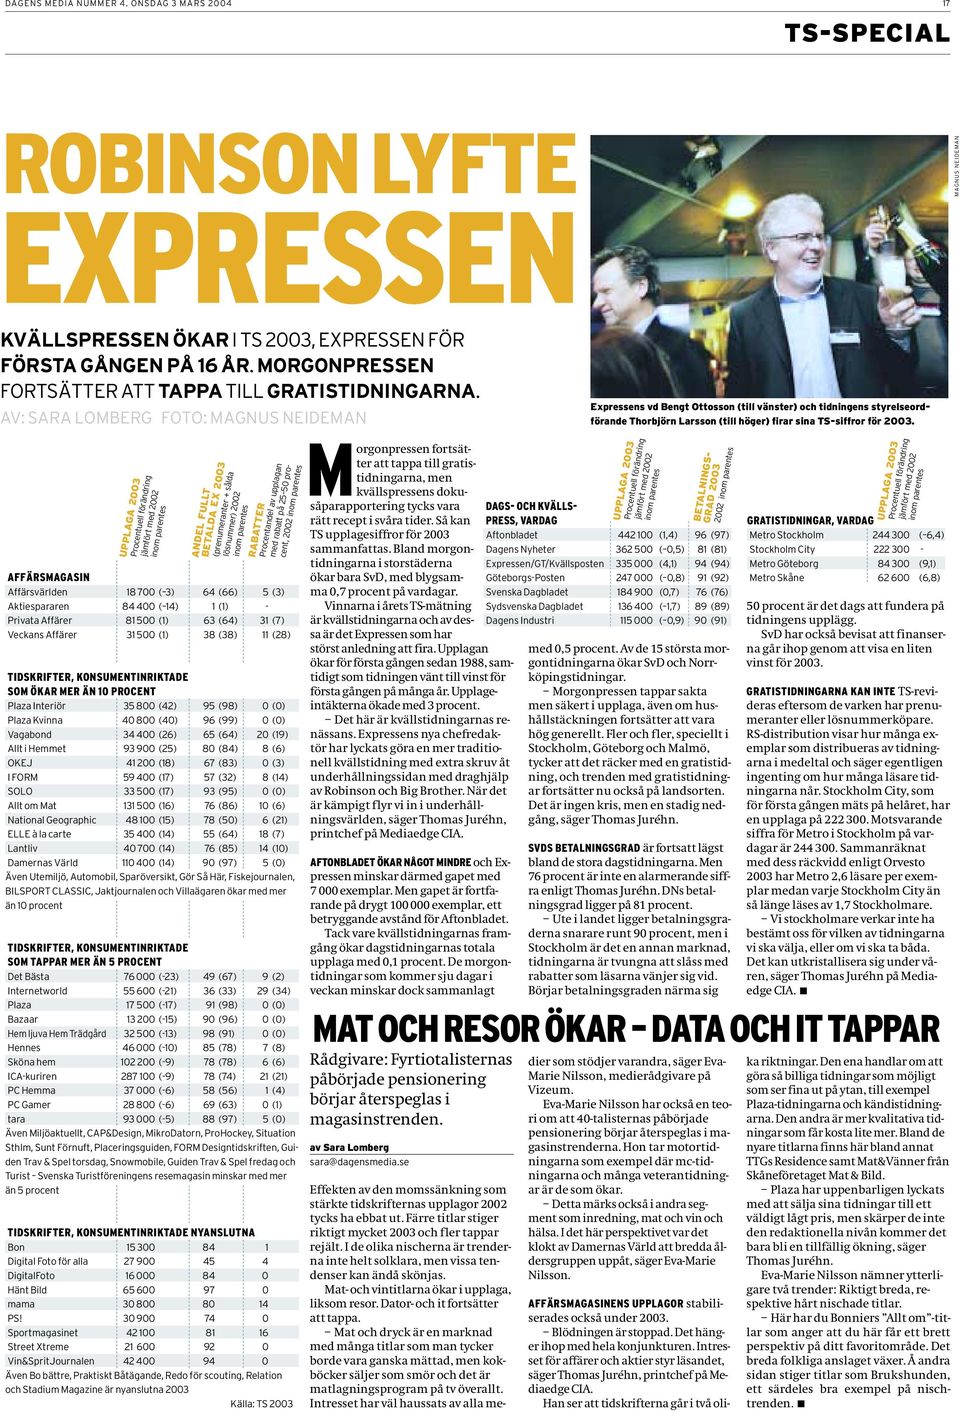 AV: SARA LOMBERG FOTO: Expressens vd Bengt Ottosson (till vänster) och tidningens styrelseordförande Thorbjörn Larsson (till höger) firar sina TS-siffror för 2003.